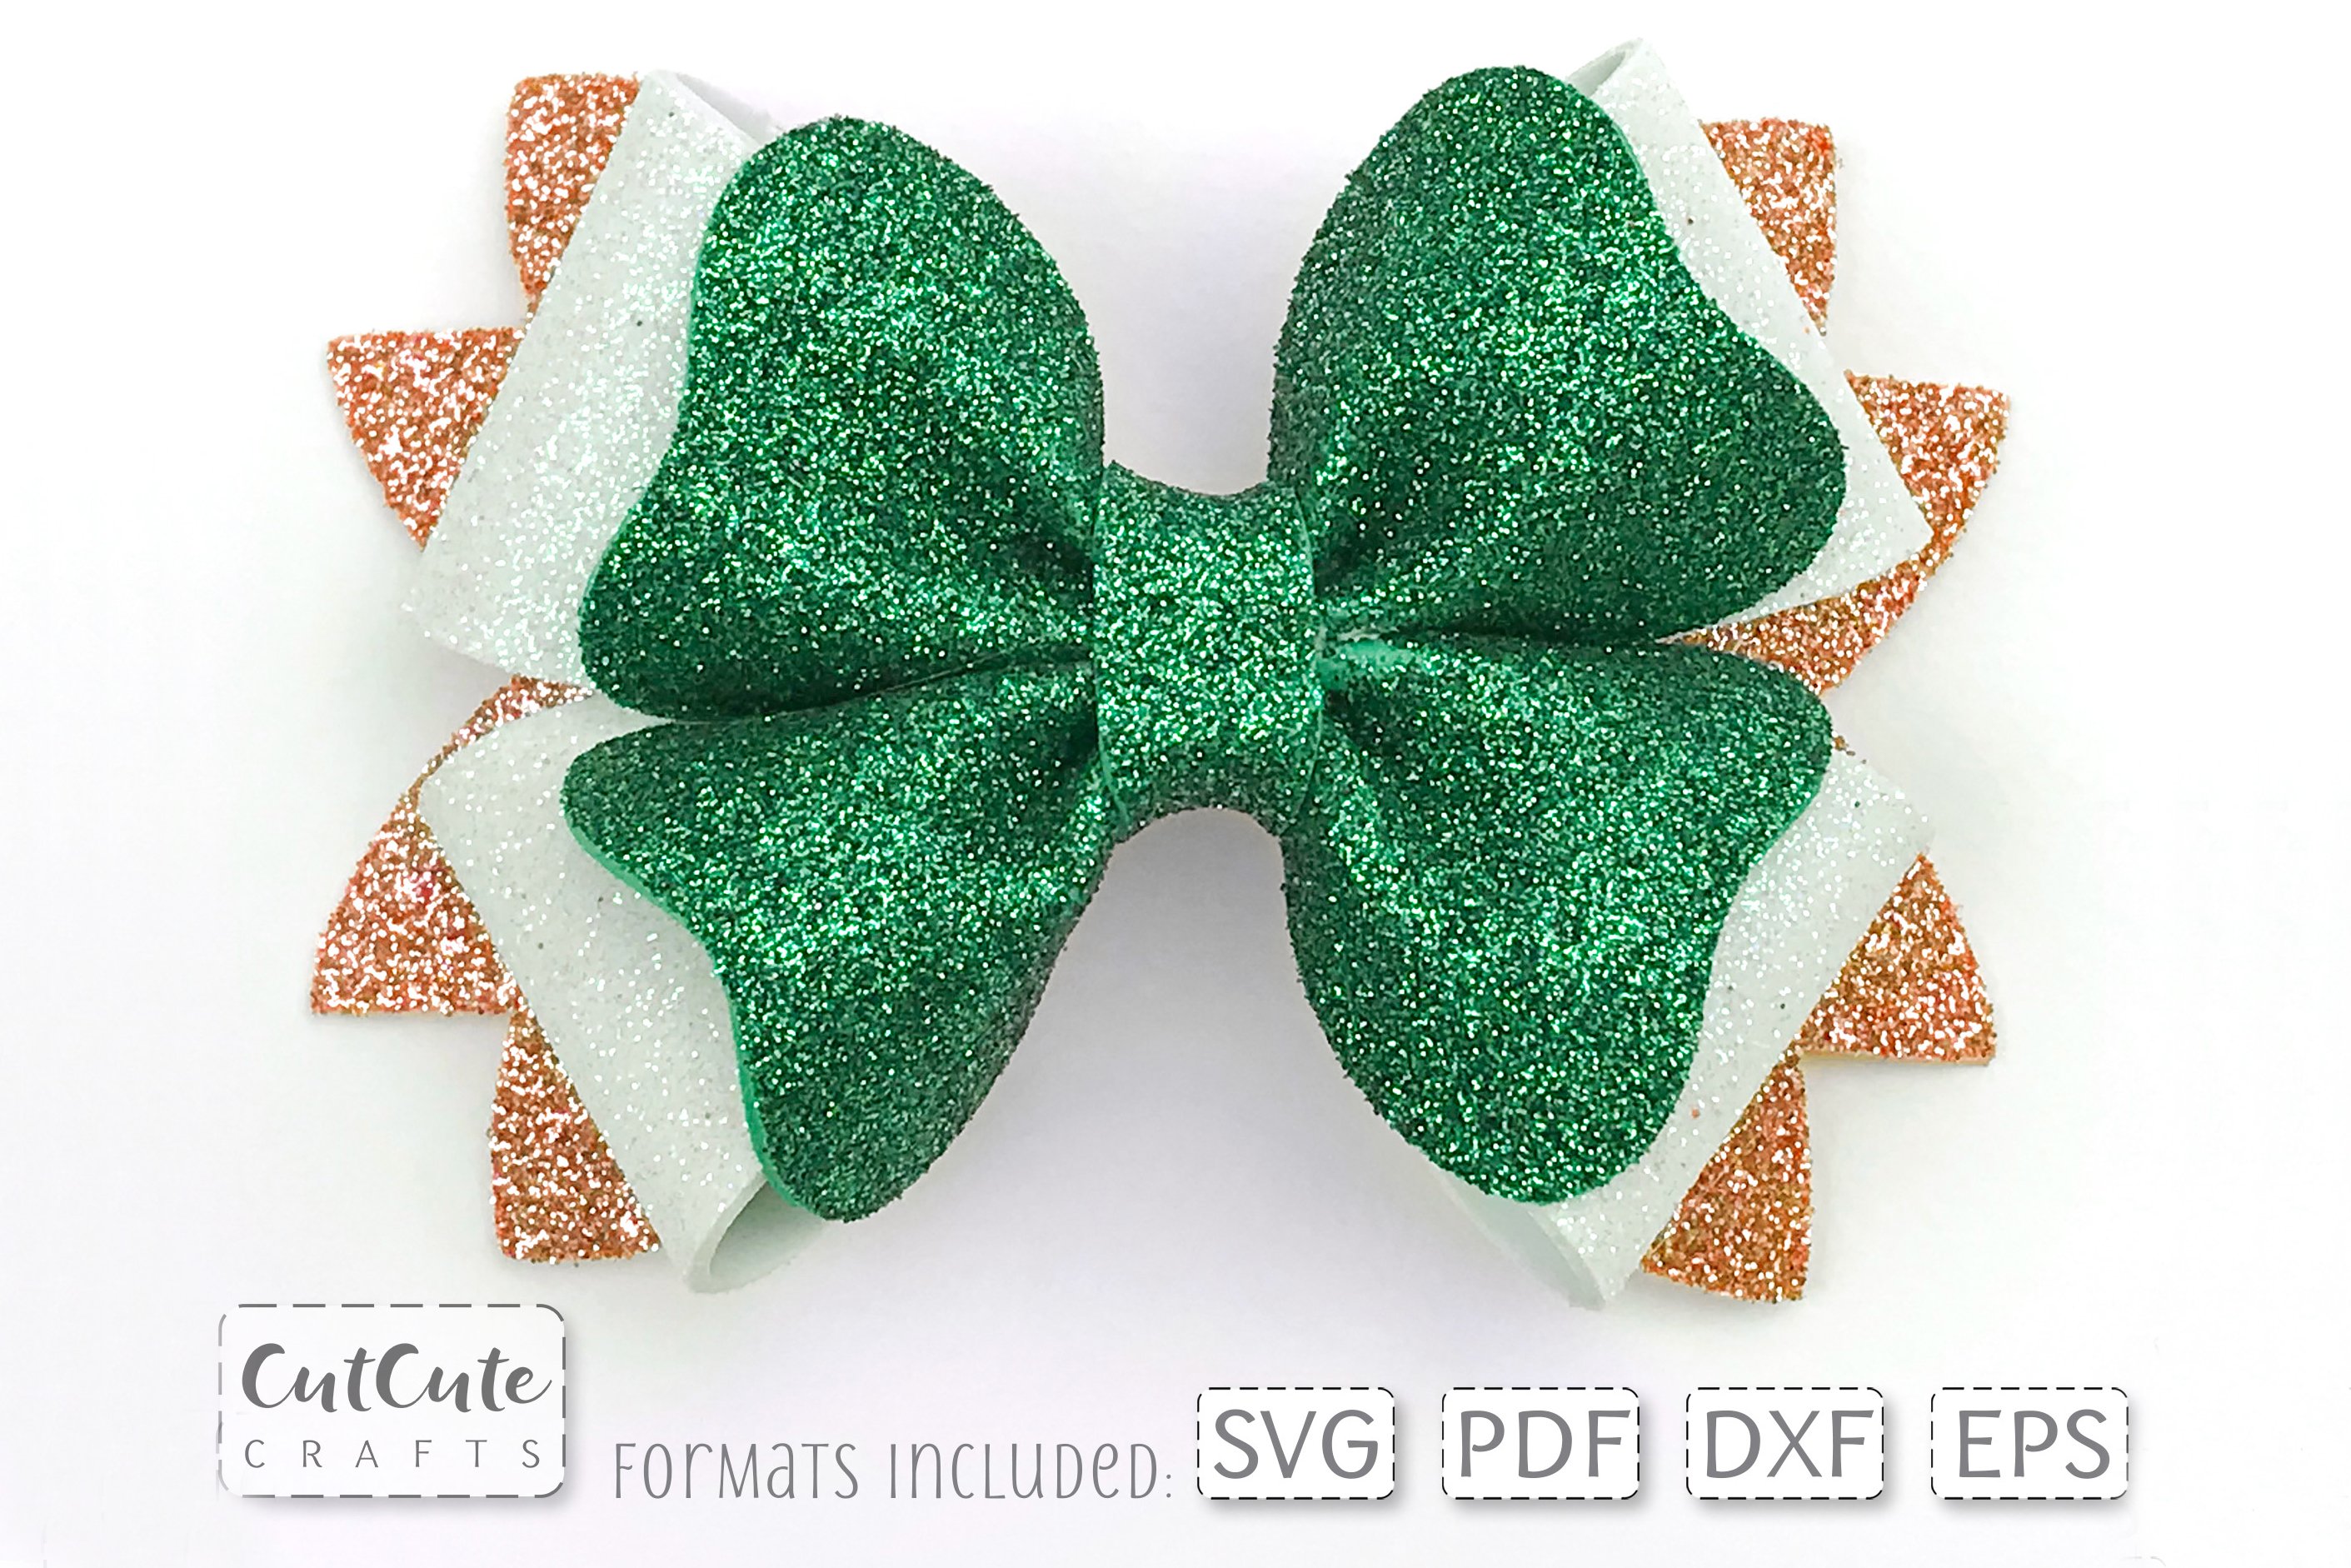 Green glitter bow for festive mood.